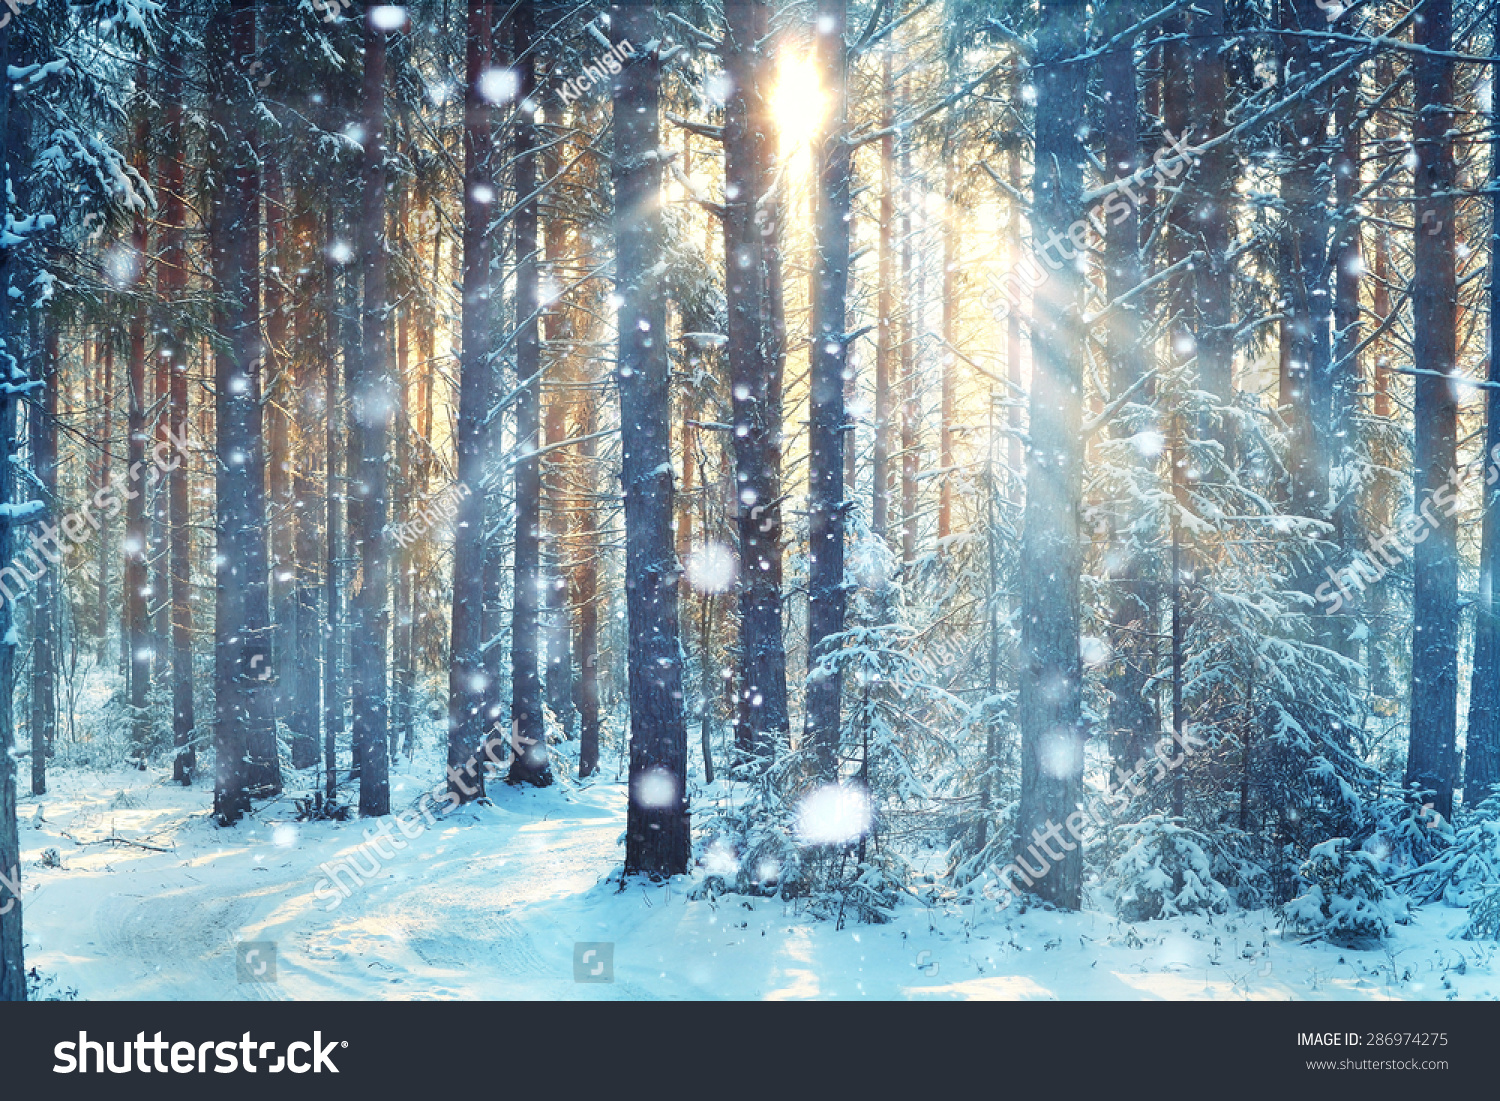 frosty winter landscape in snowy forest #286974275